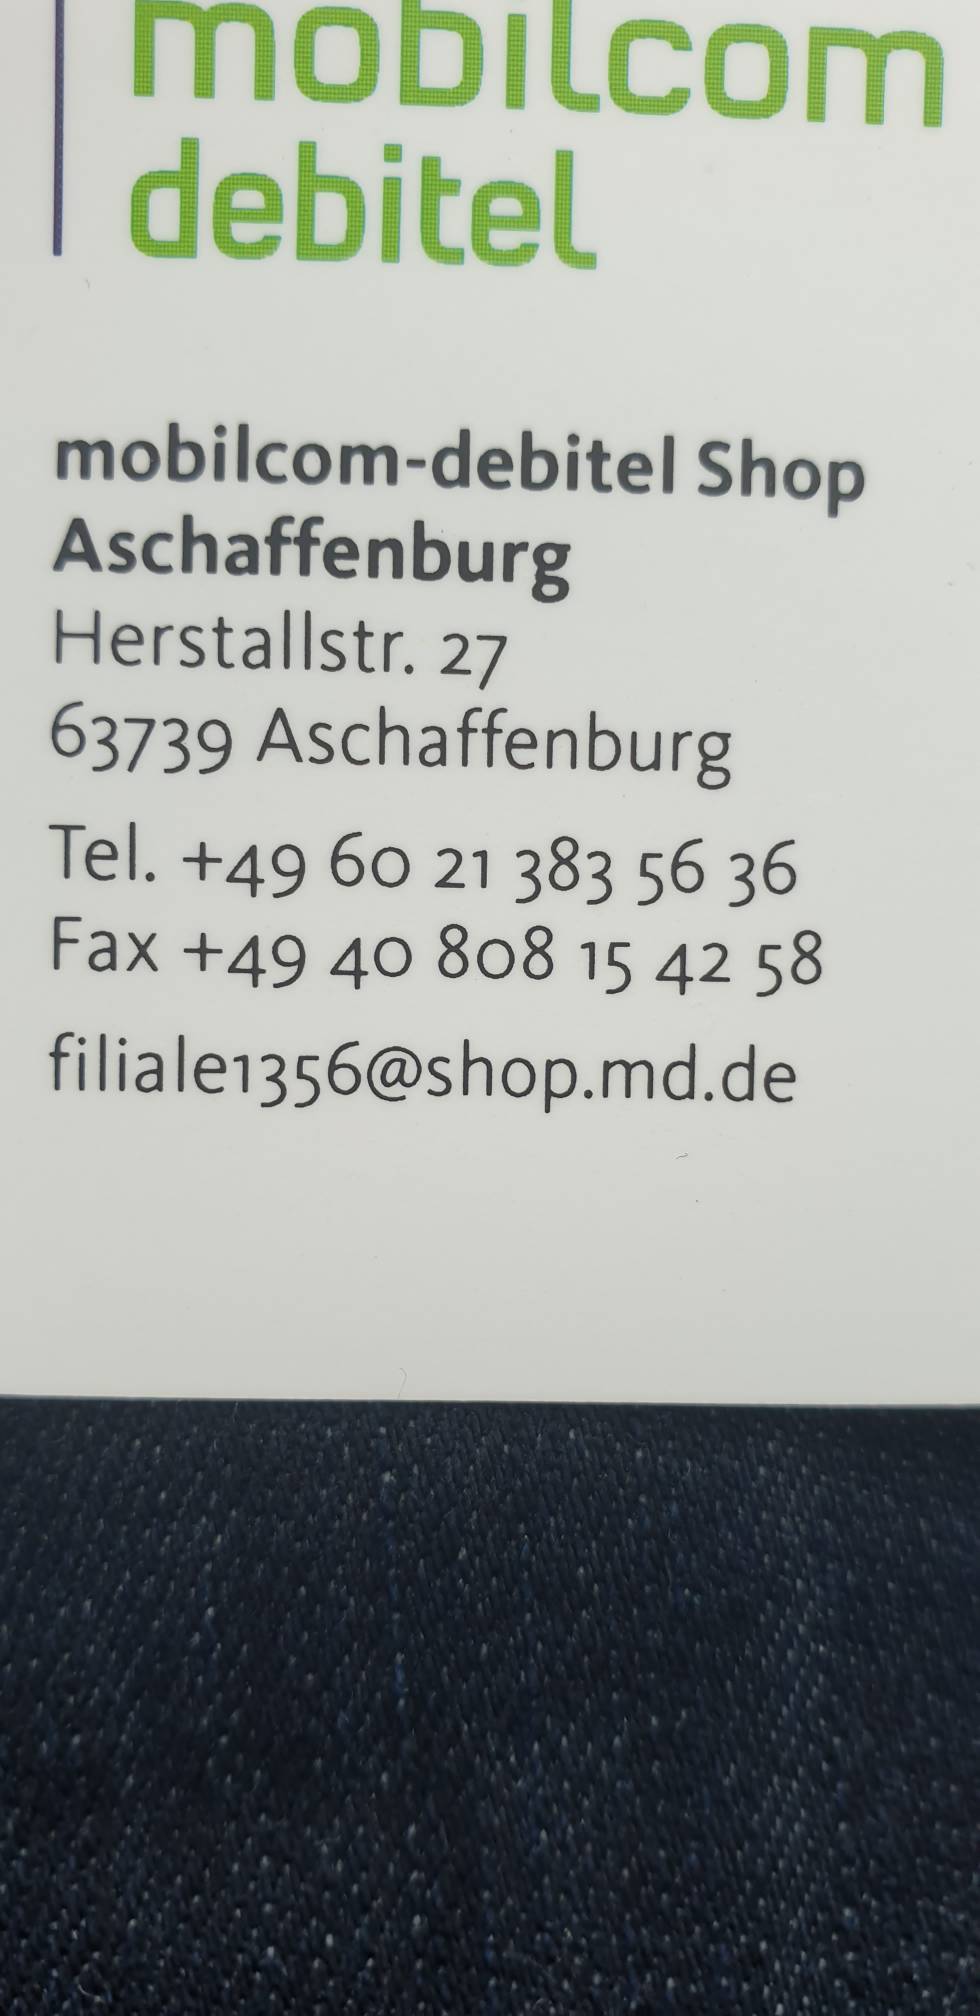 Bild 2 mobilcom-debitel GmbH in Aschaffenburg